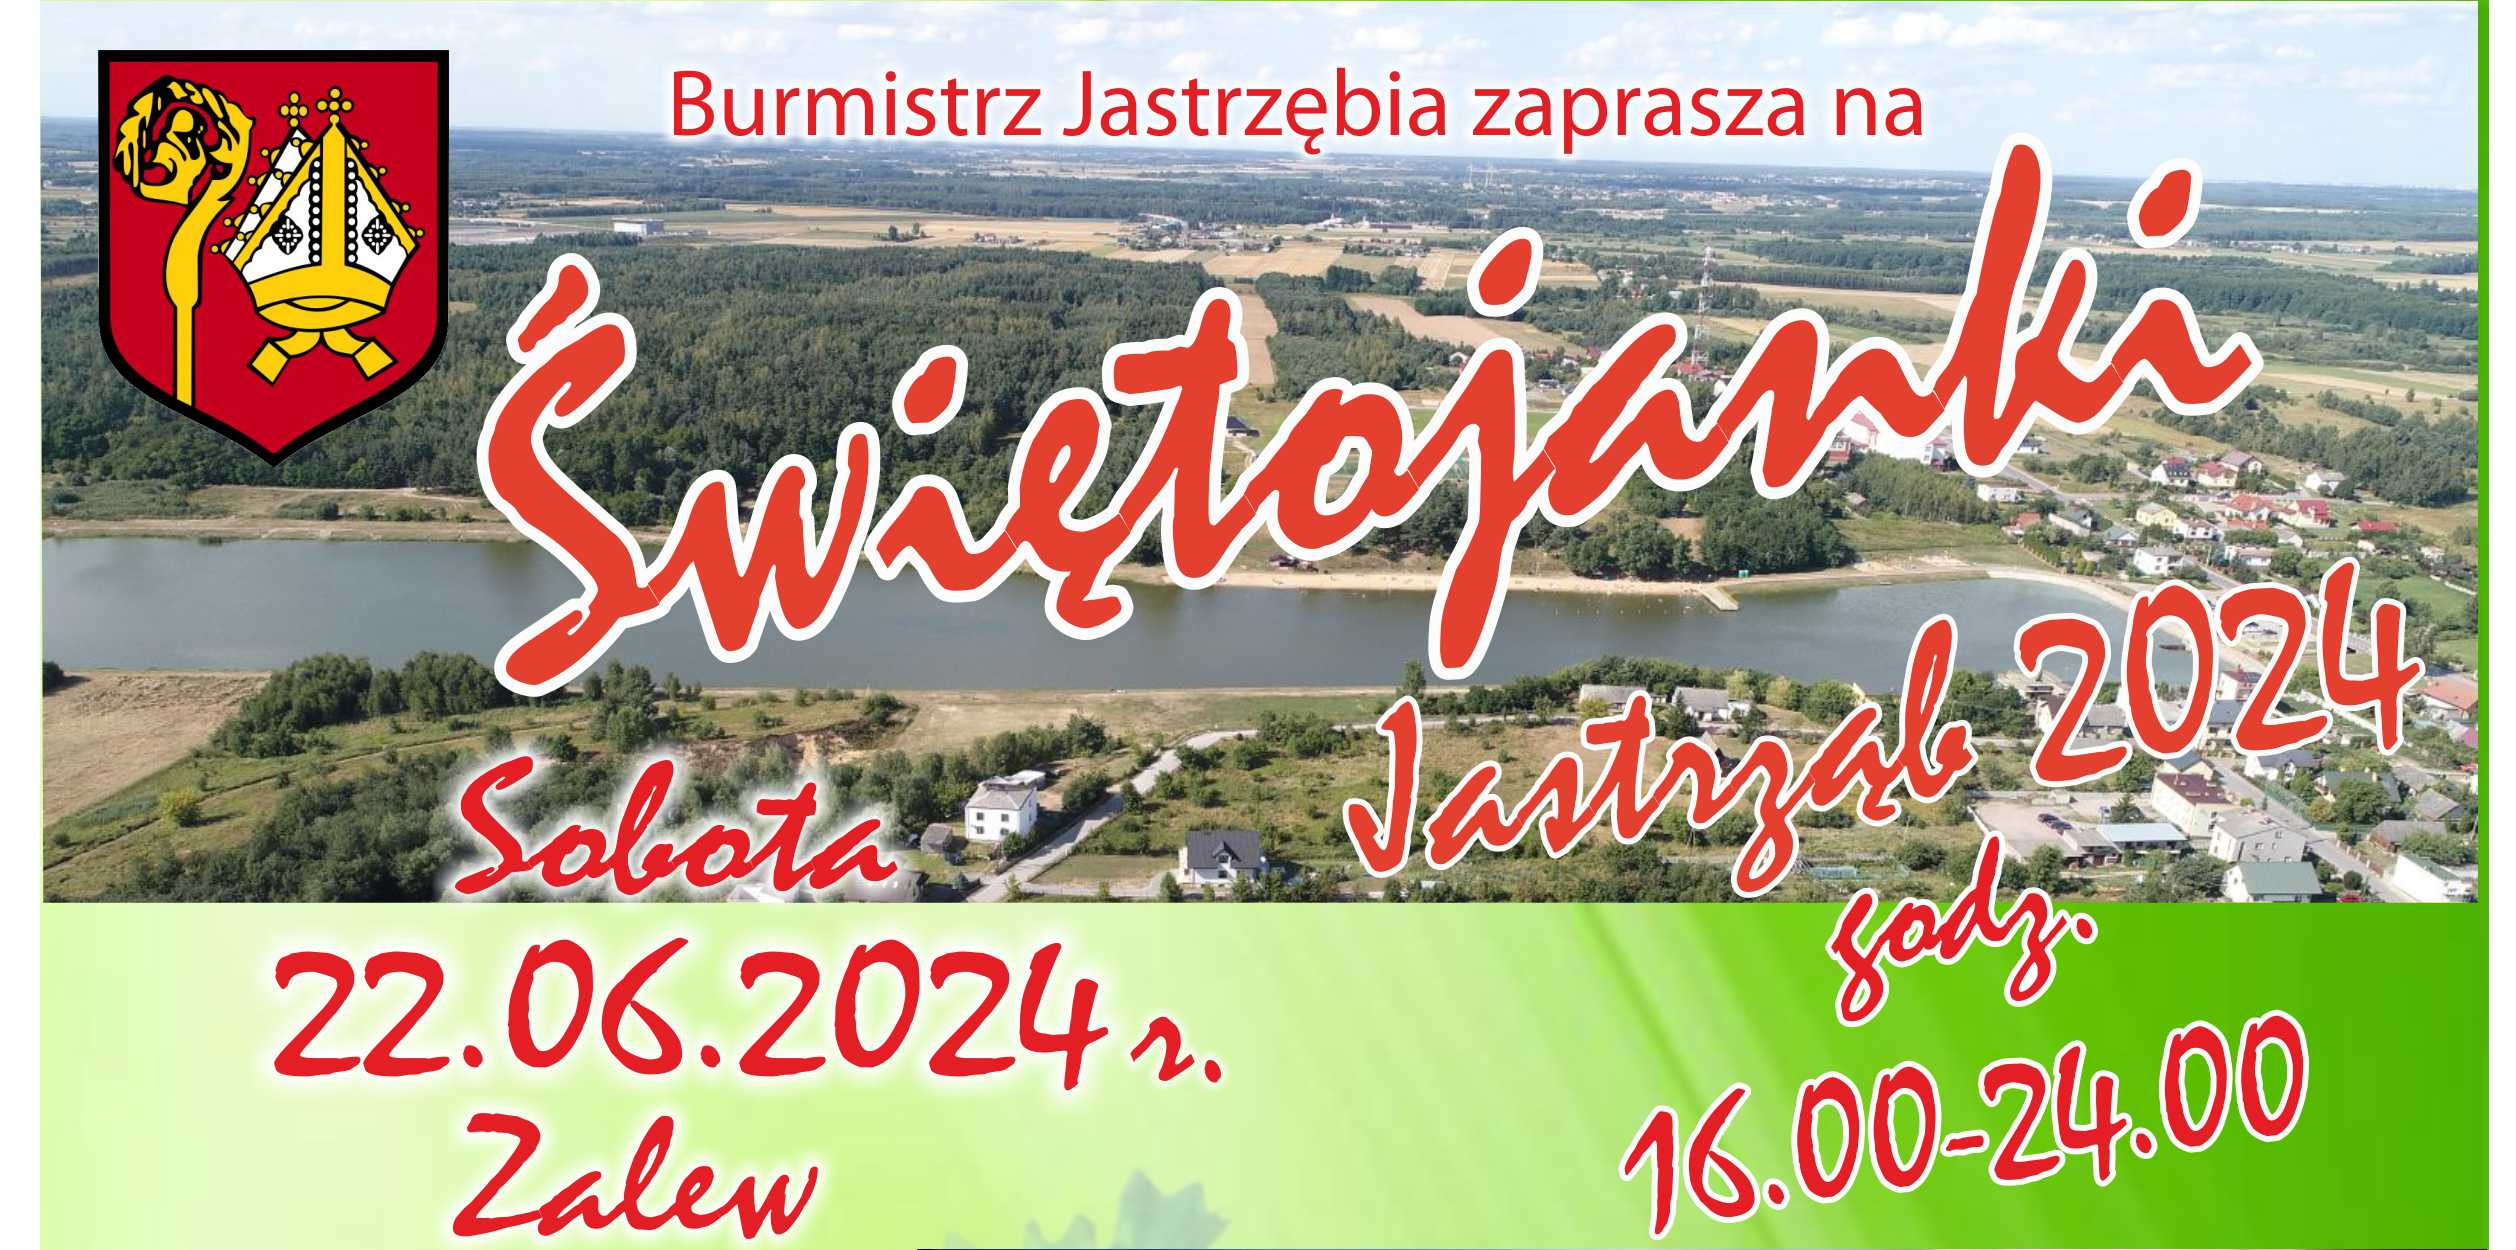 Świętojanki 2024 - Zalew w Jastrzębiu 22.06.2024 r. godz. 14.00